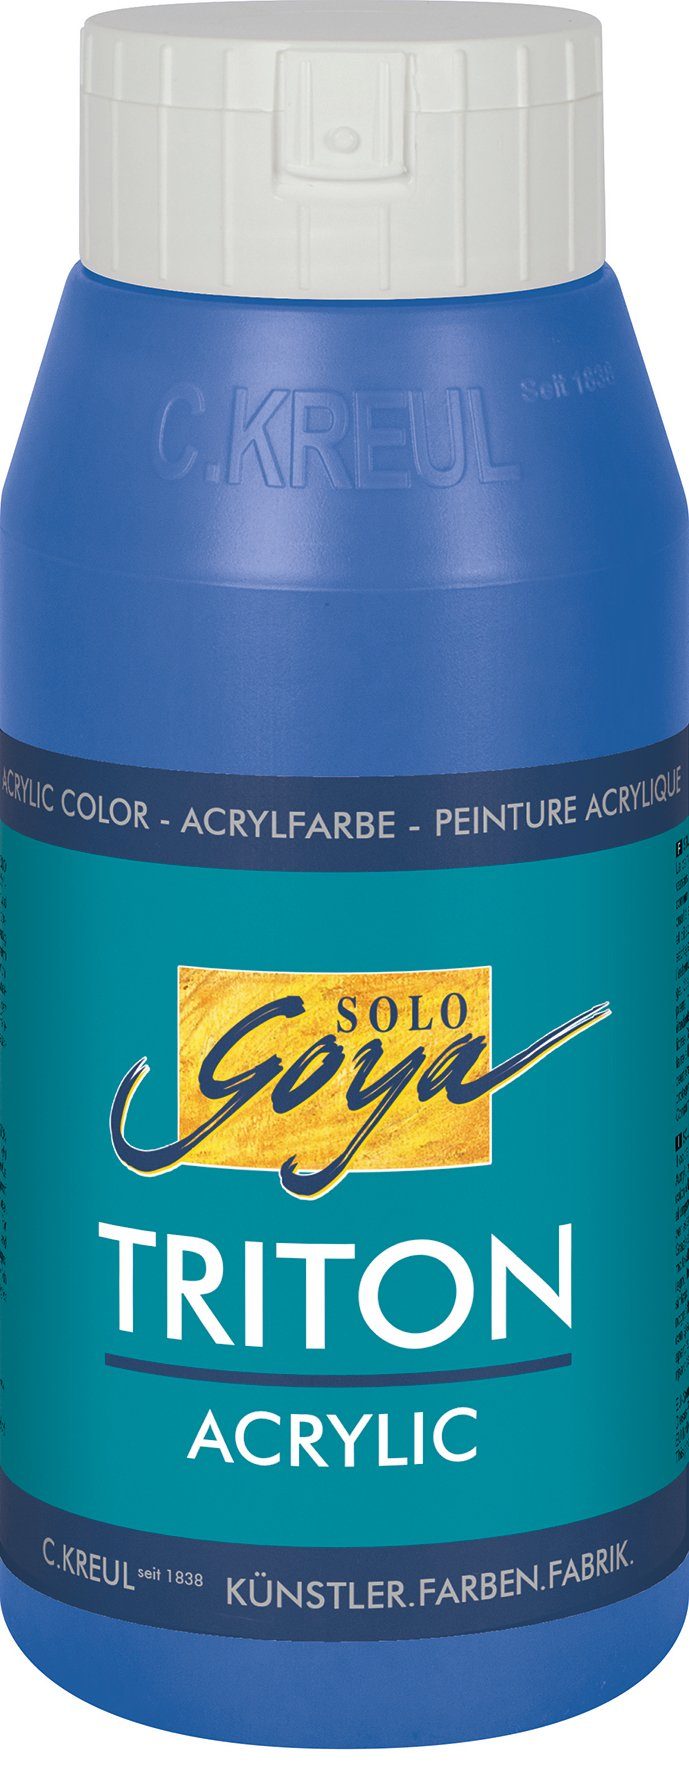 Kobaltblau 750 Acrylfarbe Solo Acrylic, ml Kreul Goya Triton